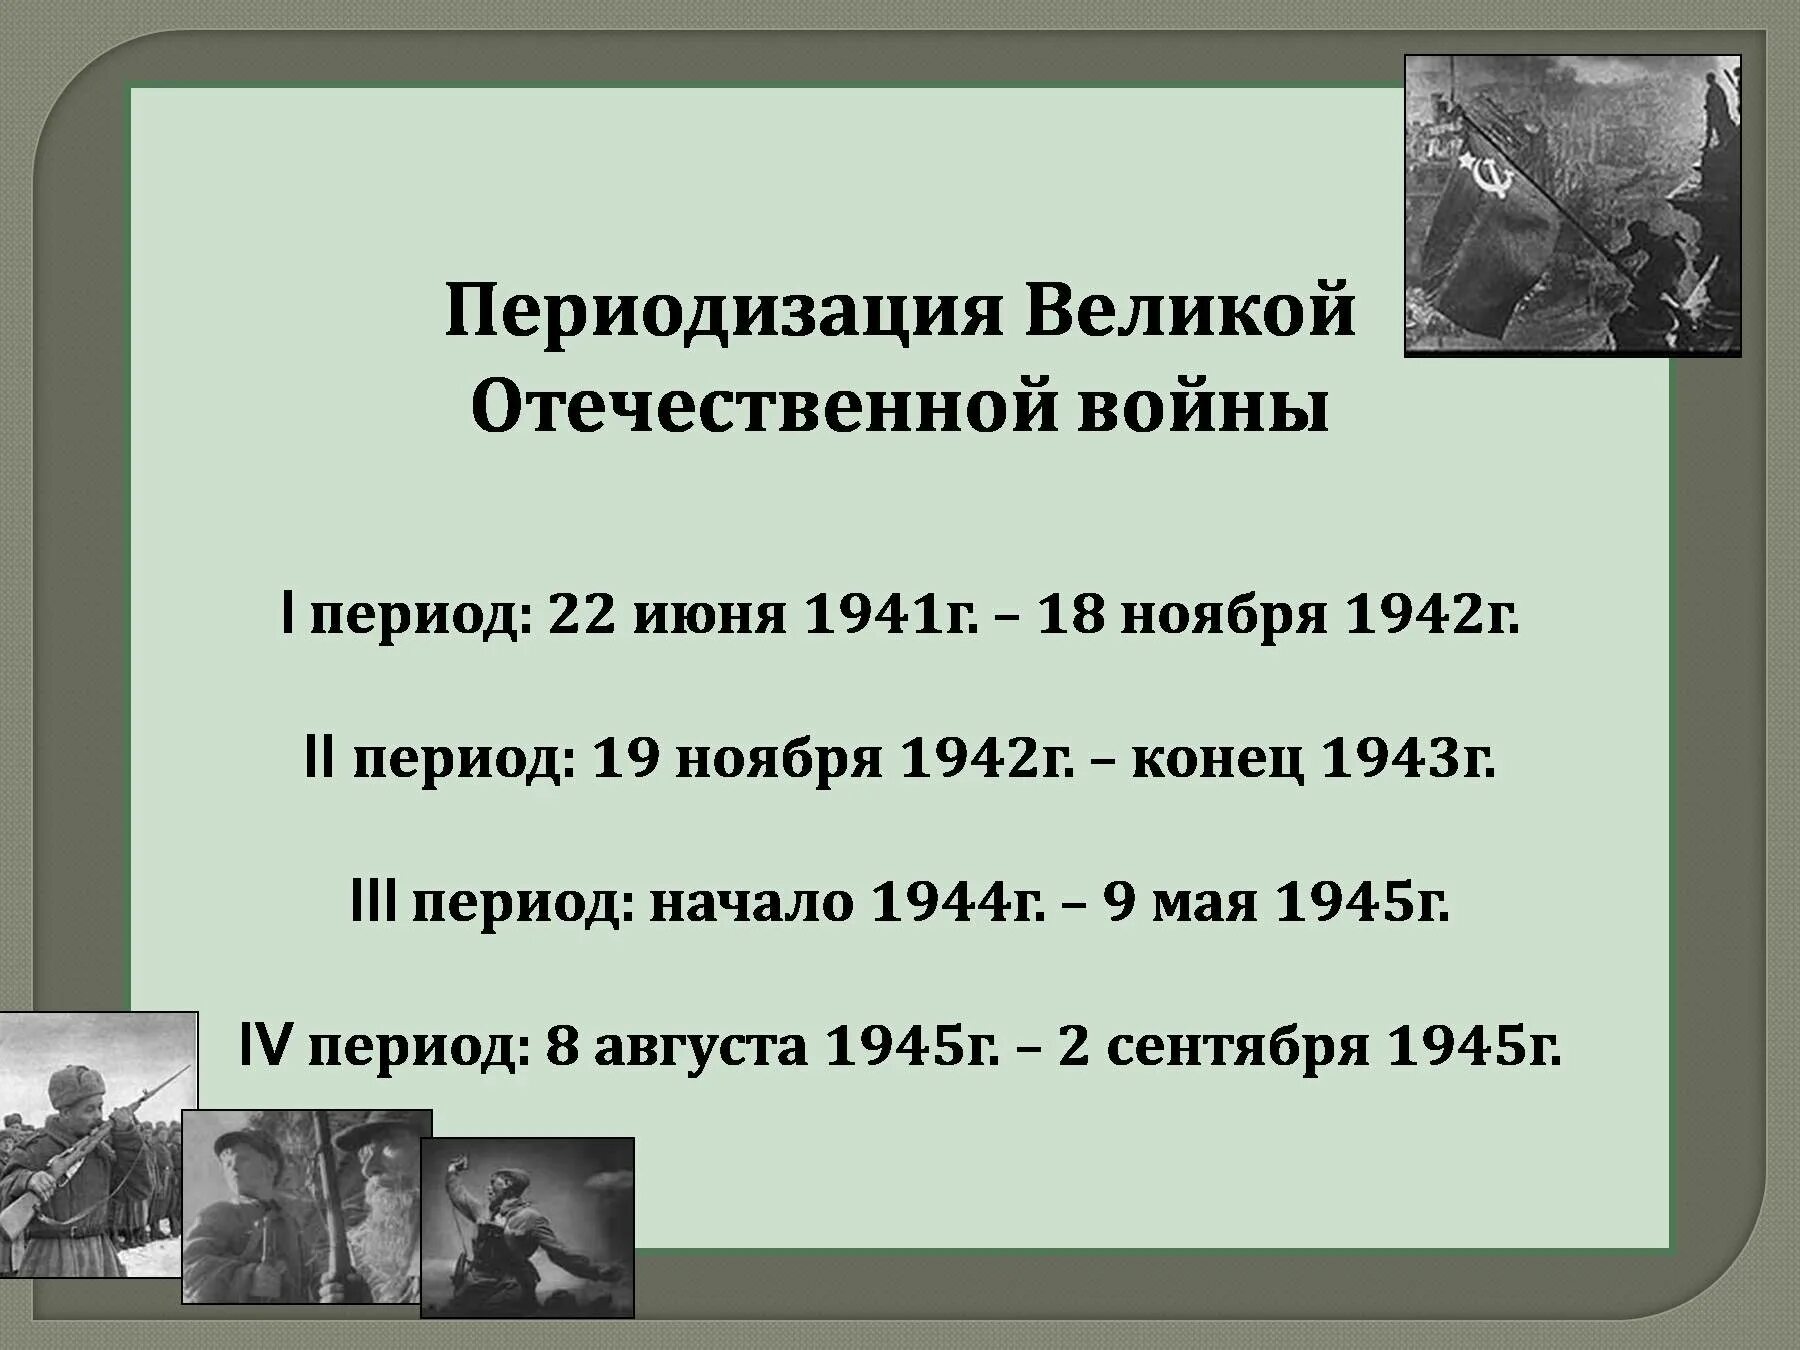 Итоги вов 1941 1945. Периодизация Великой Отечественной войны 3 периода. Третий период Великой Отечественной войны 1941-1942. ВОВ второй период 19 ноября 1942 конец 1943.